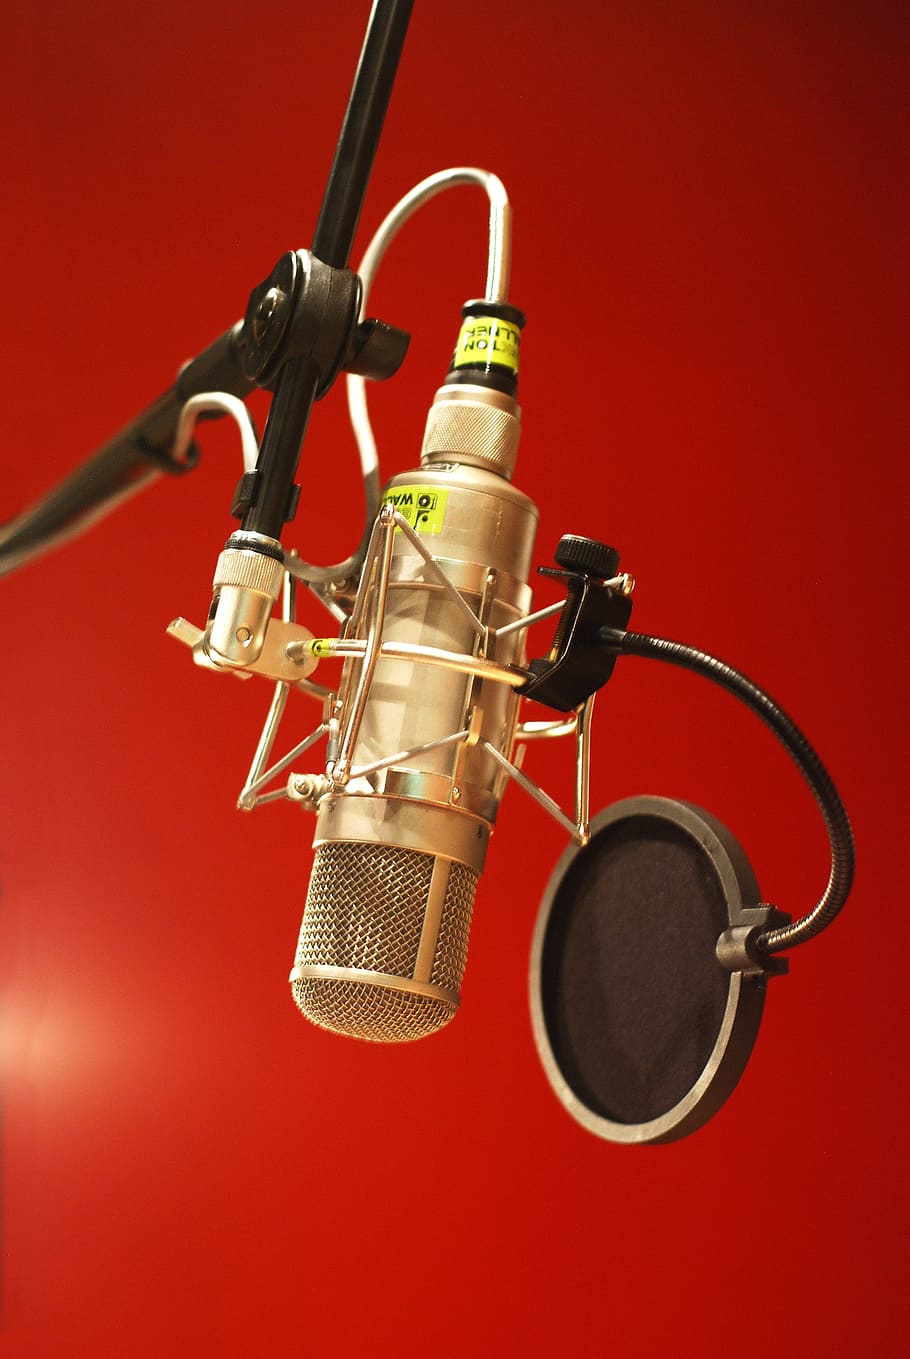 HD wallpaper: gold-colored and black condenser microphone, studio, music  studio | Wallpaper Flare